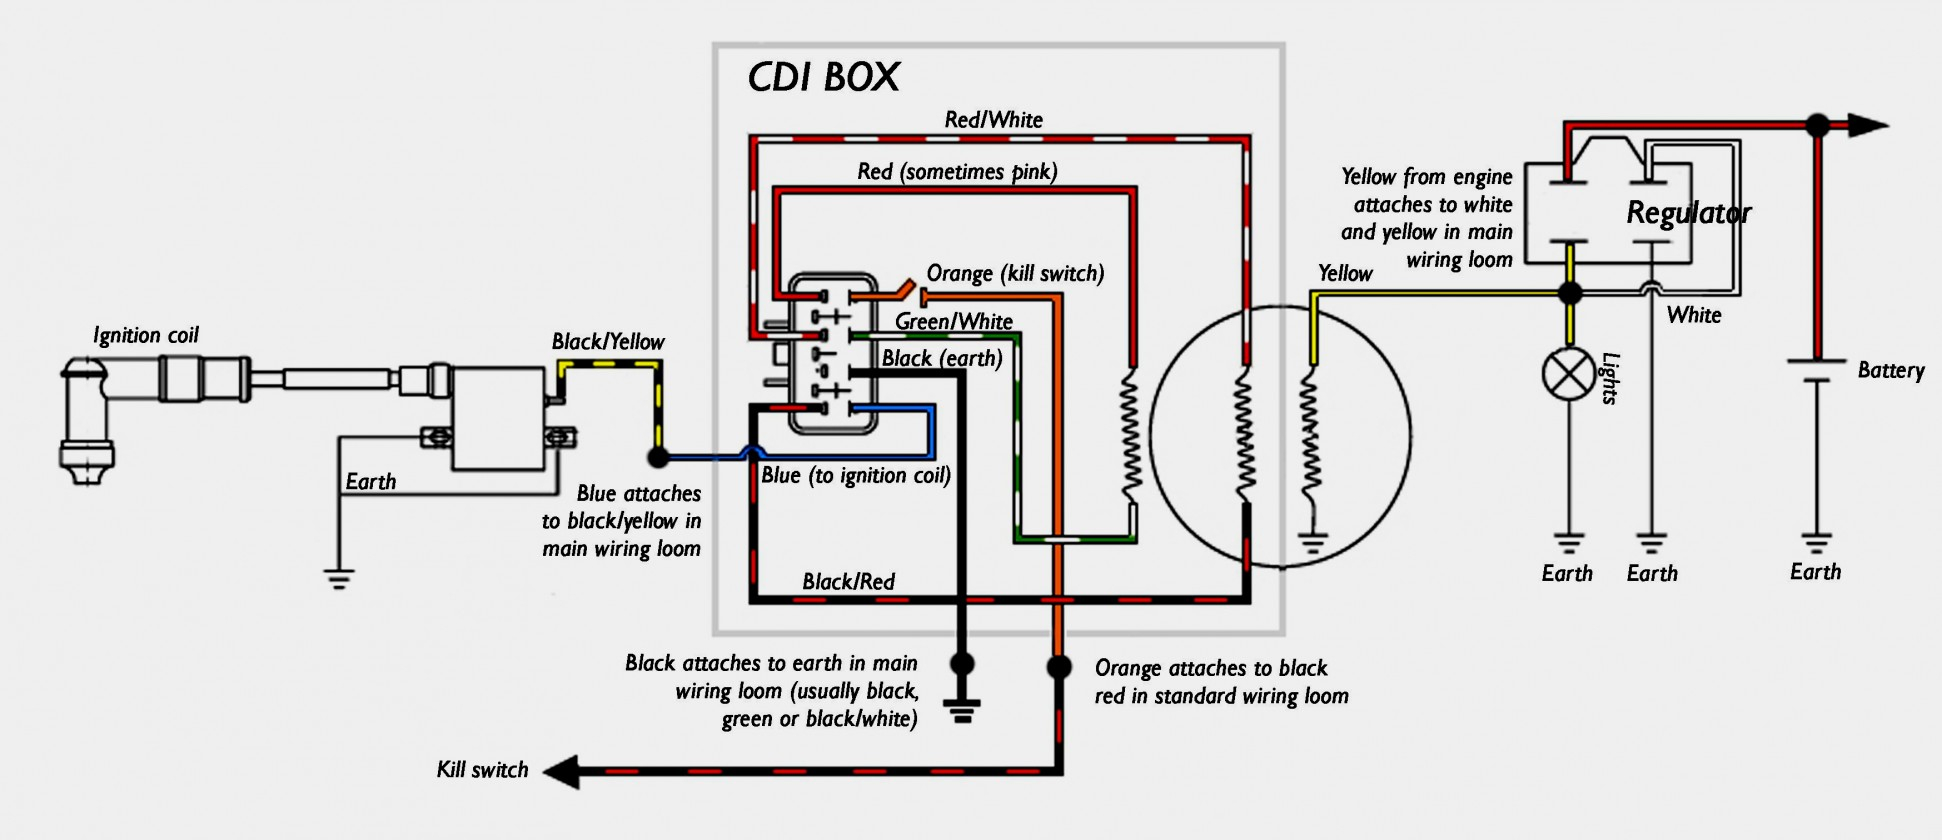 Honda Cdi Box Wiring | Wiring Diagram - 6 Pin Cdi Wiring Diagram